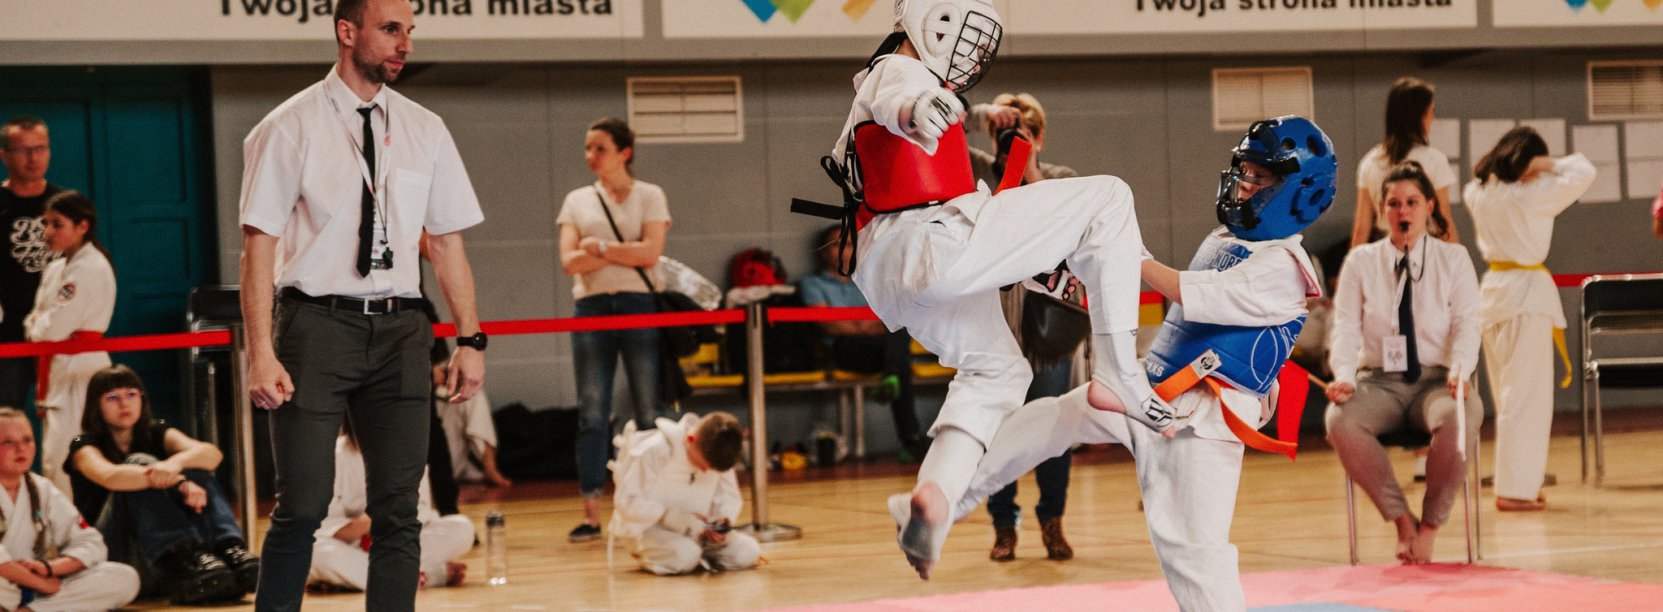 Karateka z wyskoku atakuje przeciwnika, obok sędzia 